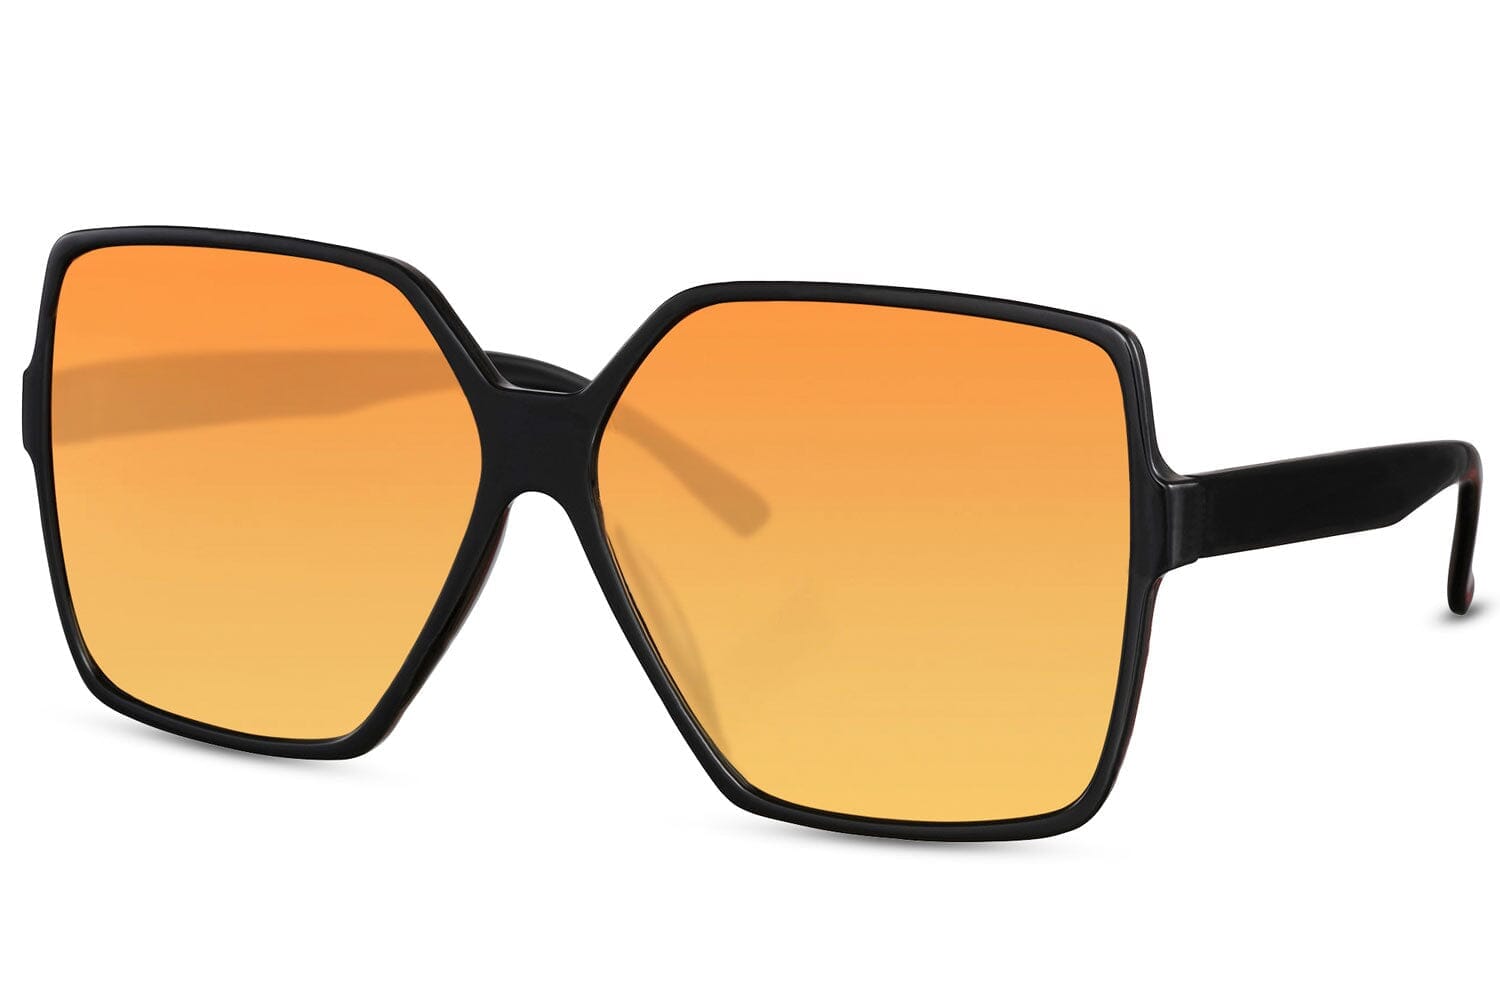 70's sunglasses. Orange lenses. Black large frames.